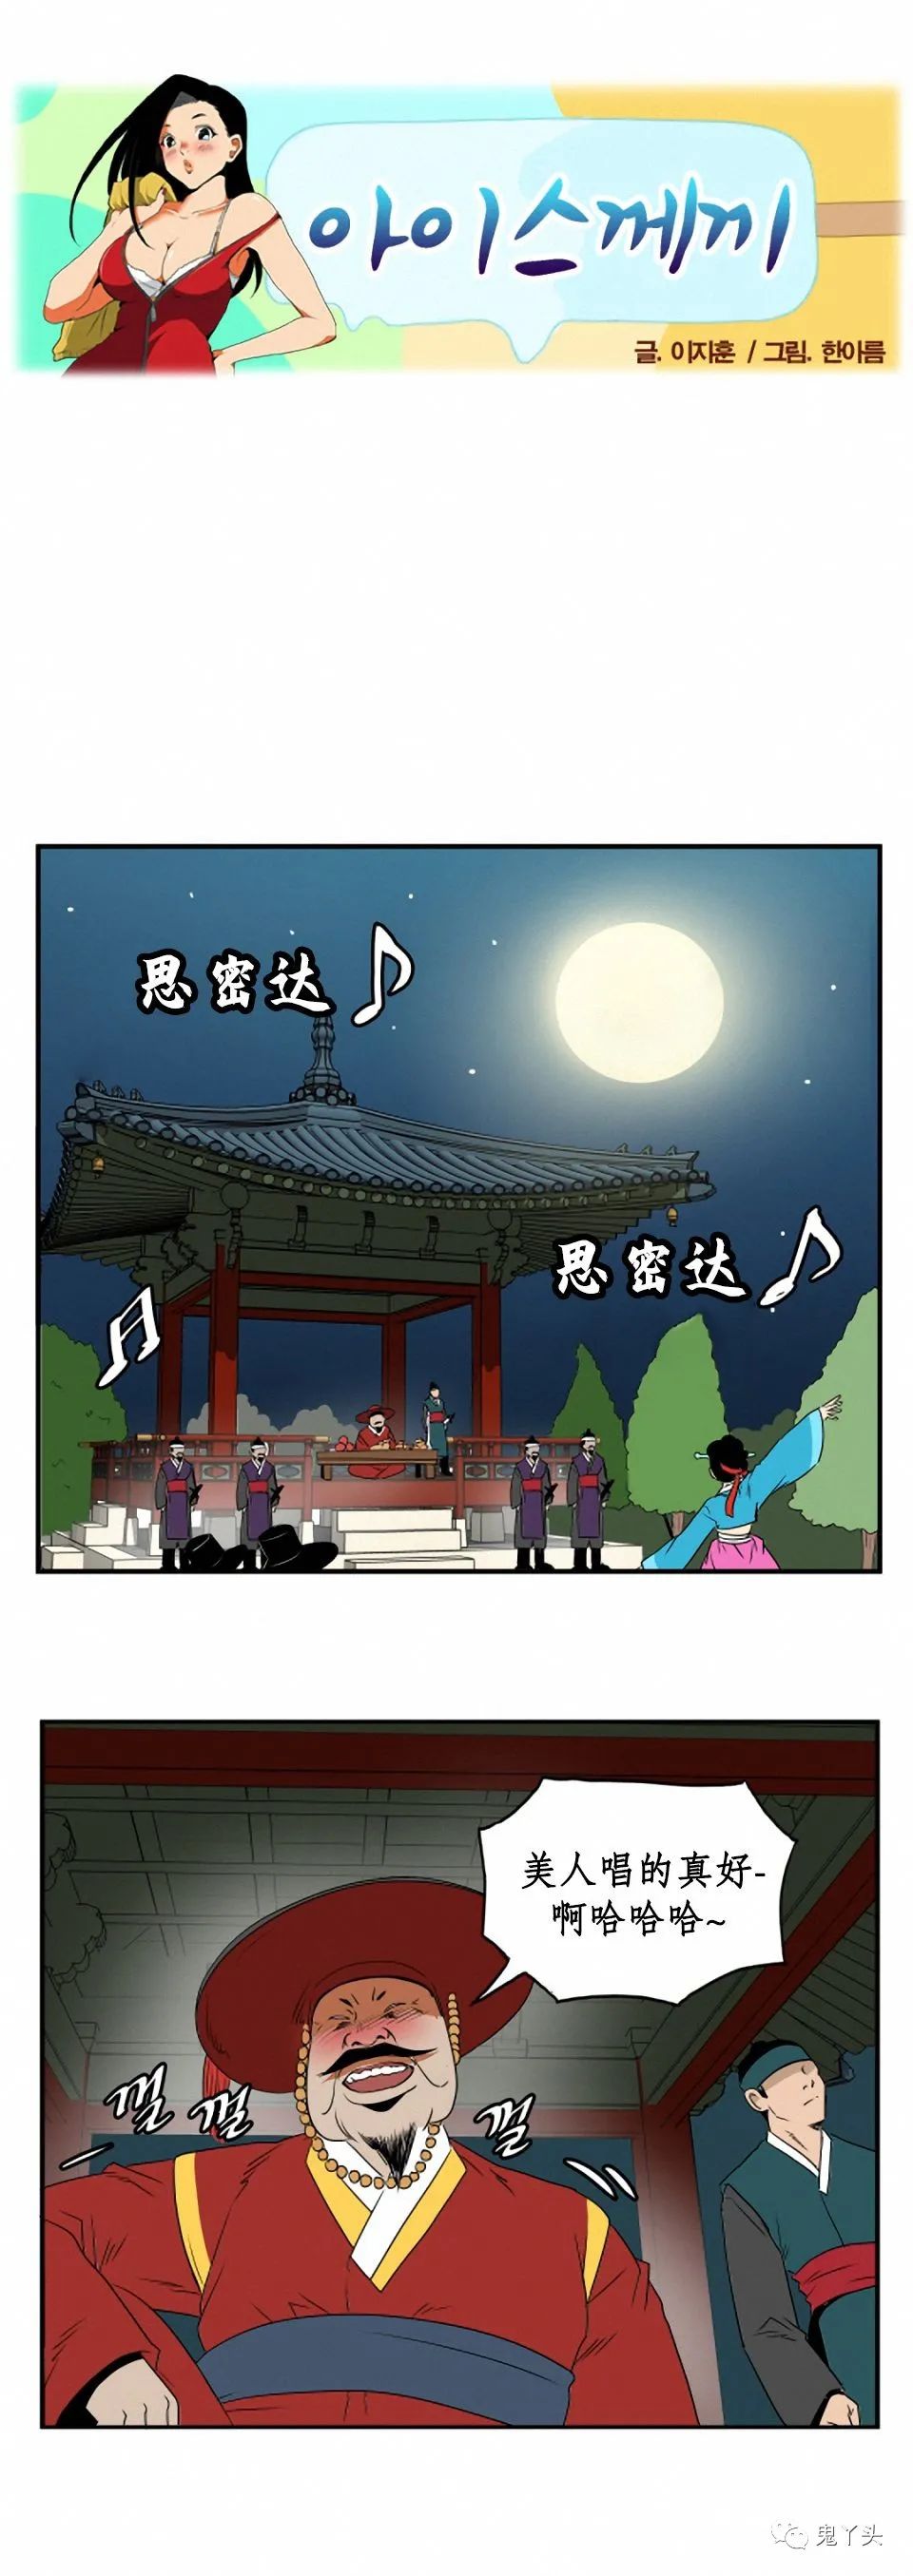 韩国内涵漫画《有刺客》,搞笑漫画小学生表示看不懂